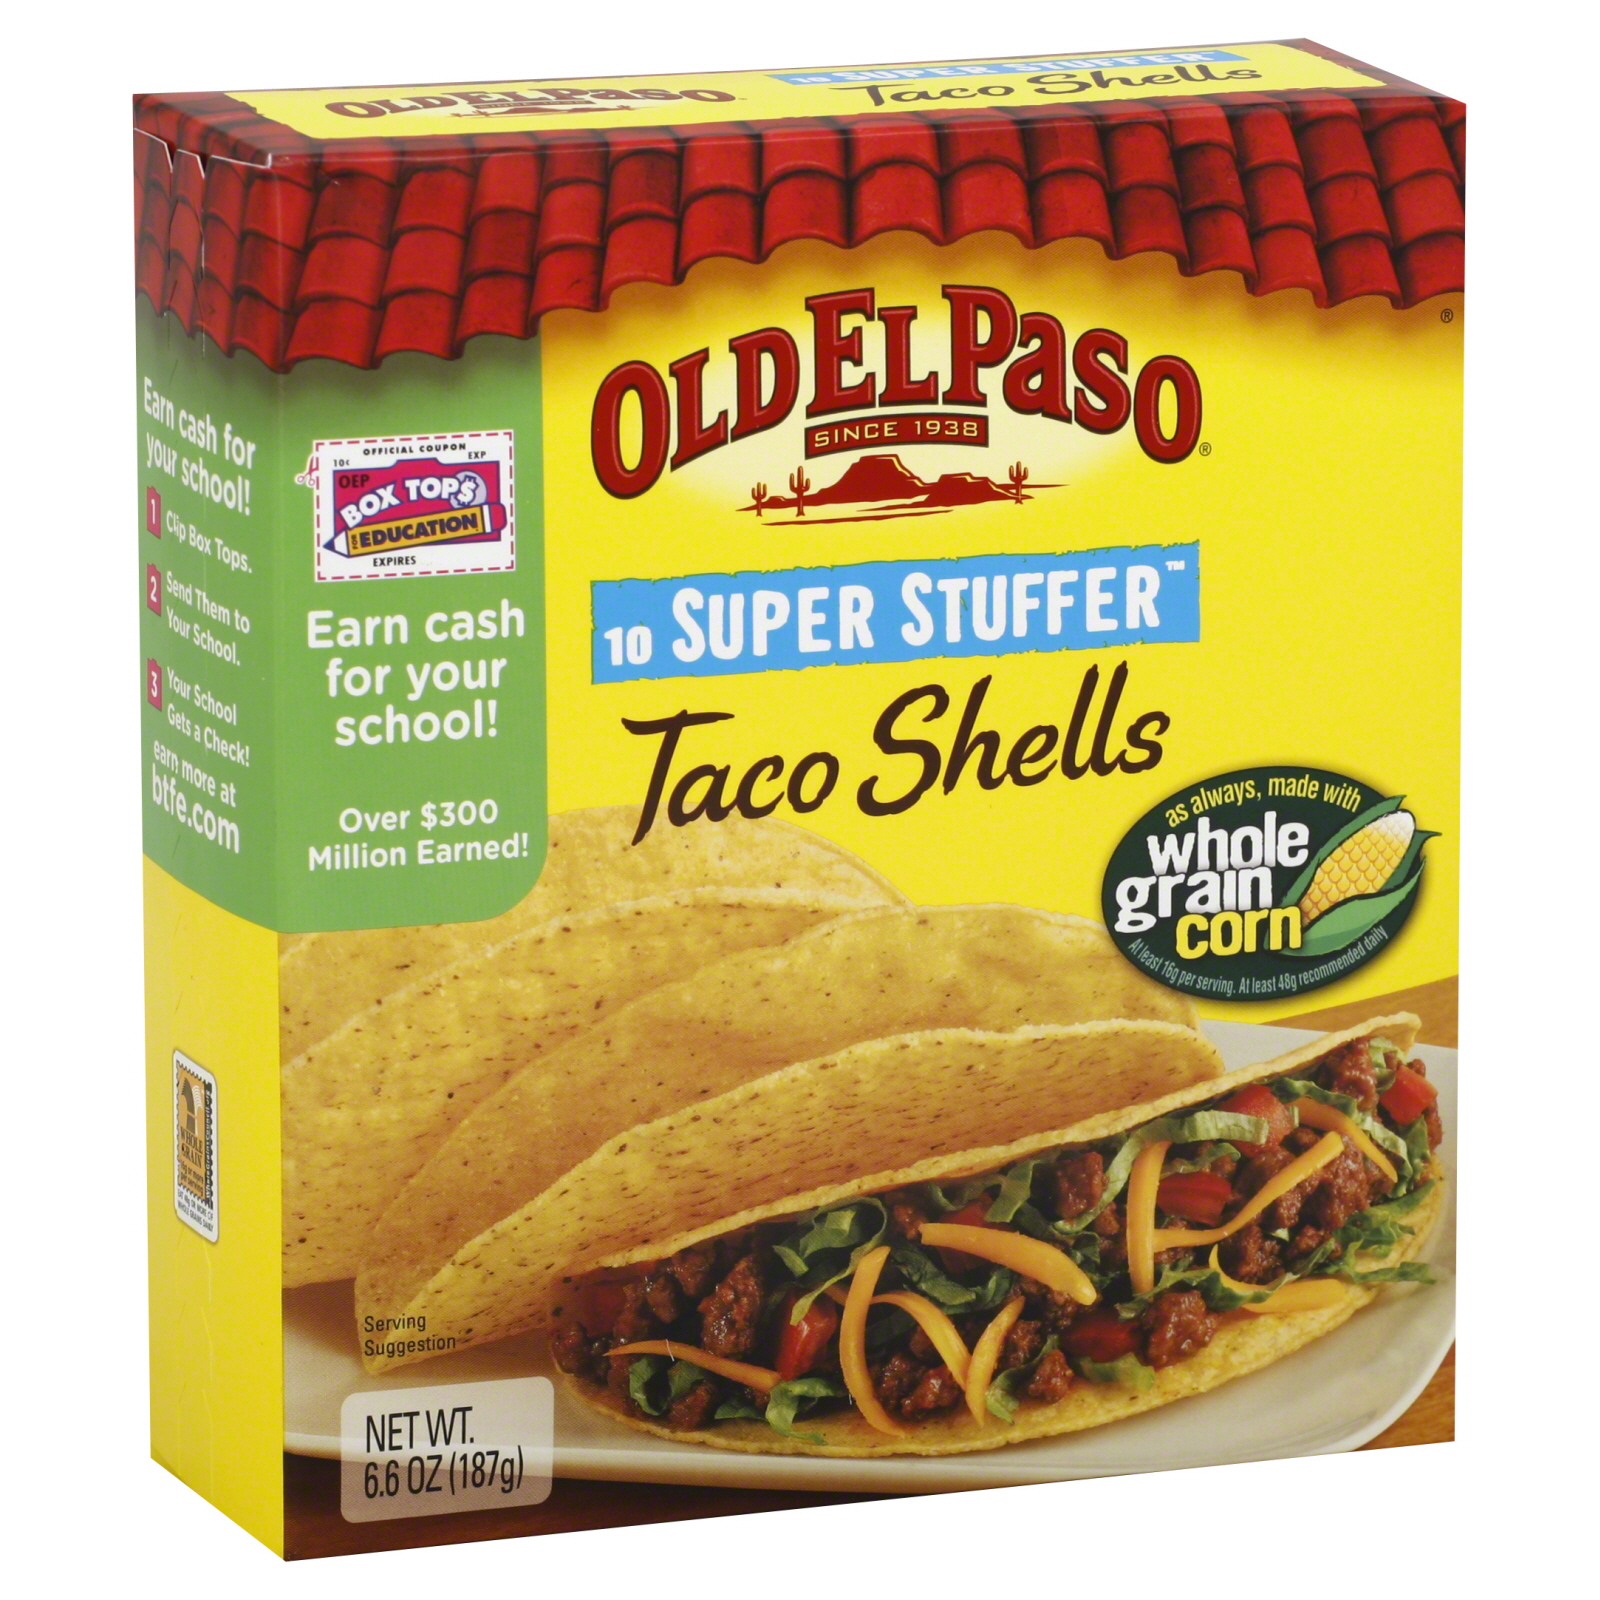 Old El Paso Taco Shells, Super Stuffer, 10 shells [6.6 oz (187 g)]